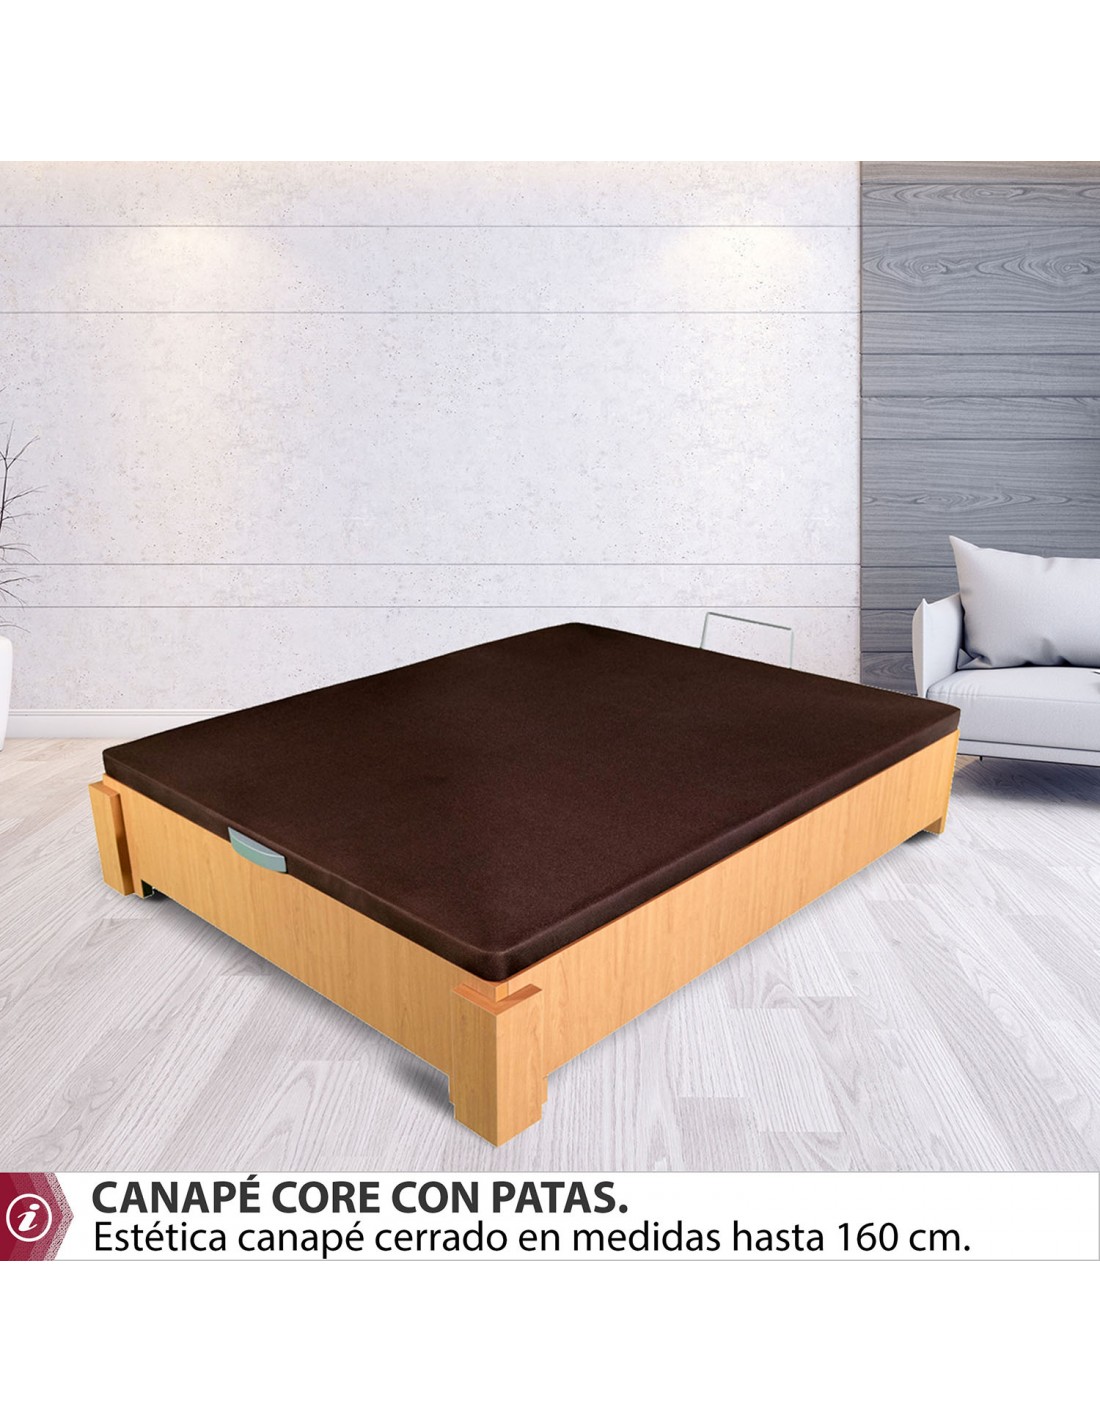 Canape COMPAC lateral Delanubbi, especial para tapizar y decorar